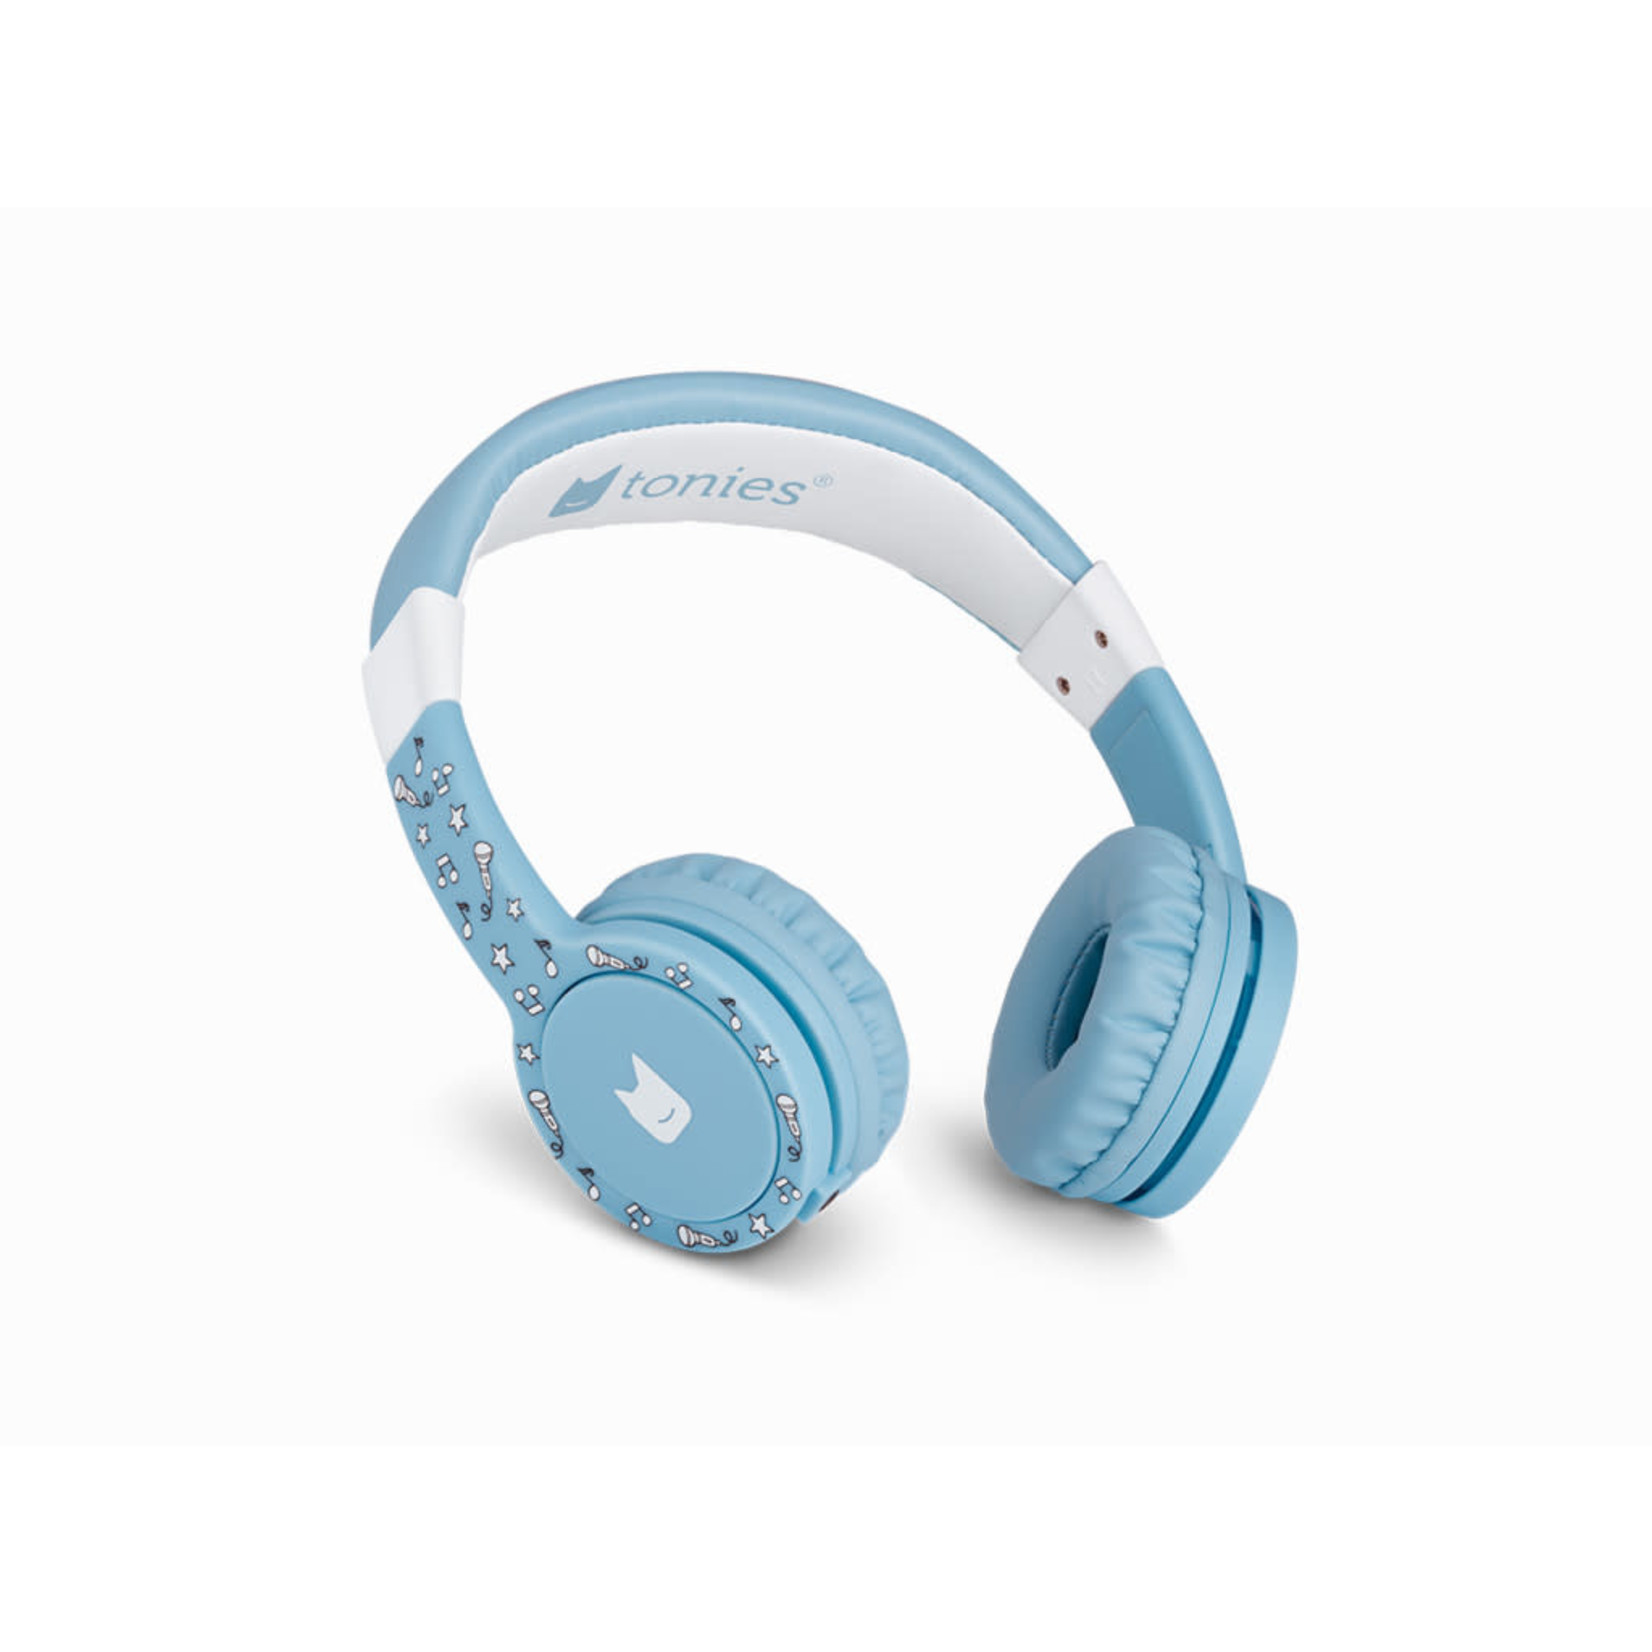 Tonies Tonie Headphones - Blue